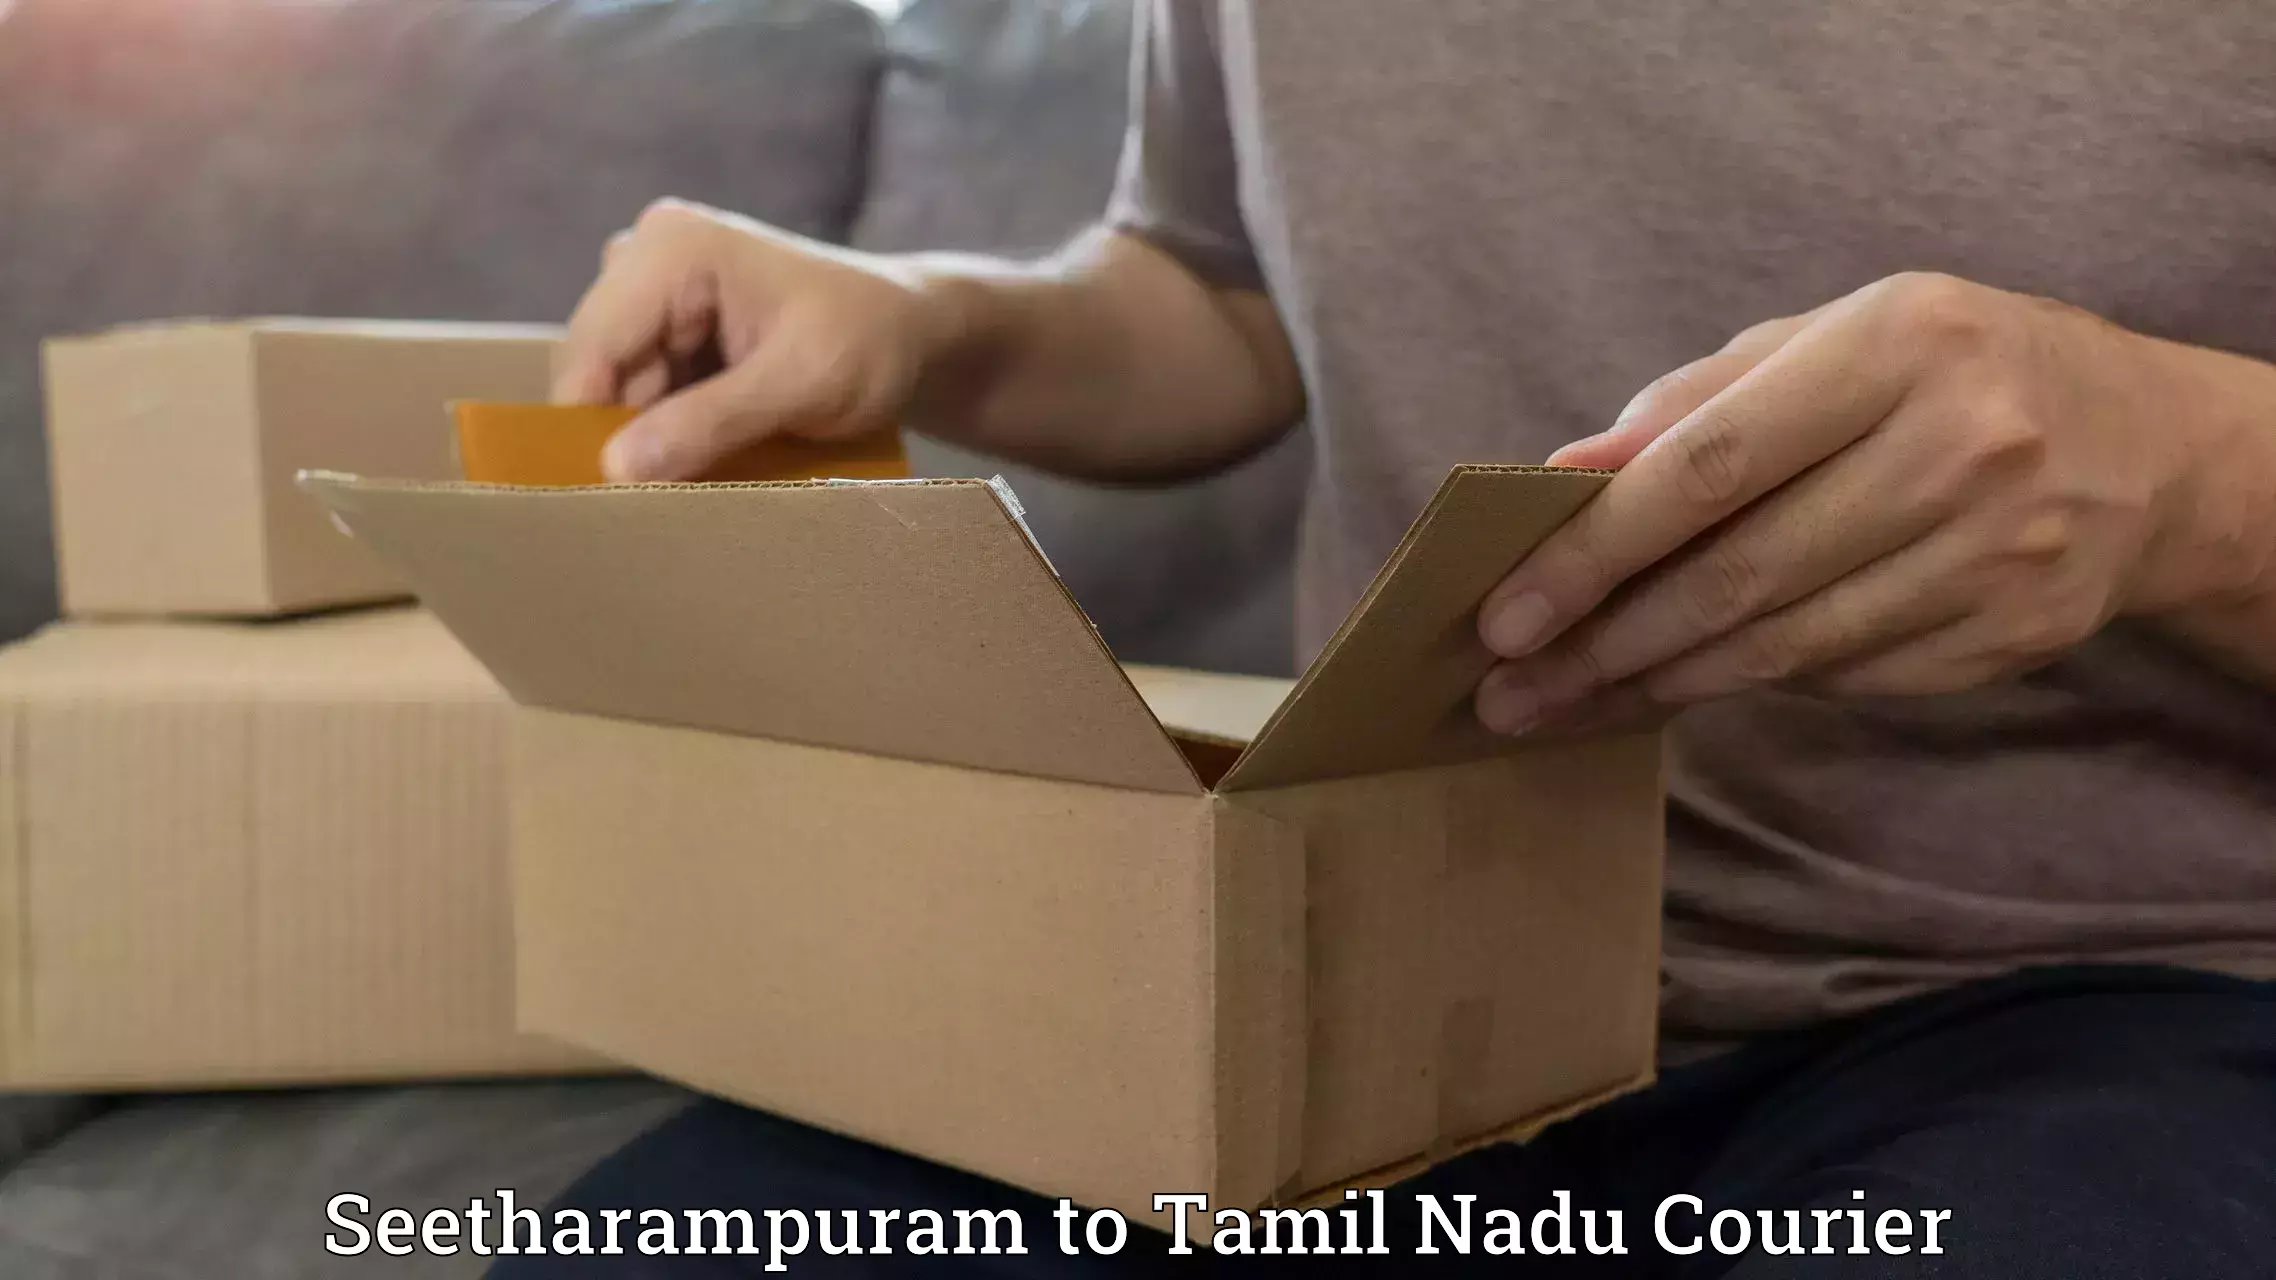 Urgent courier needs Seetharampuram to Karur